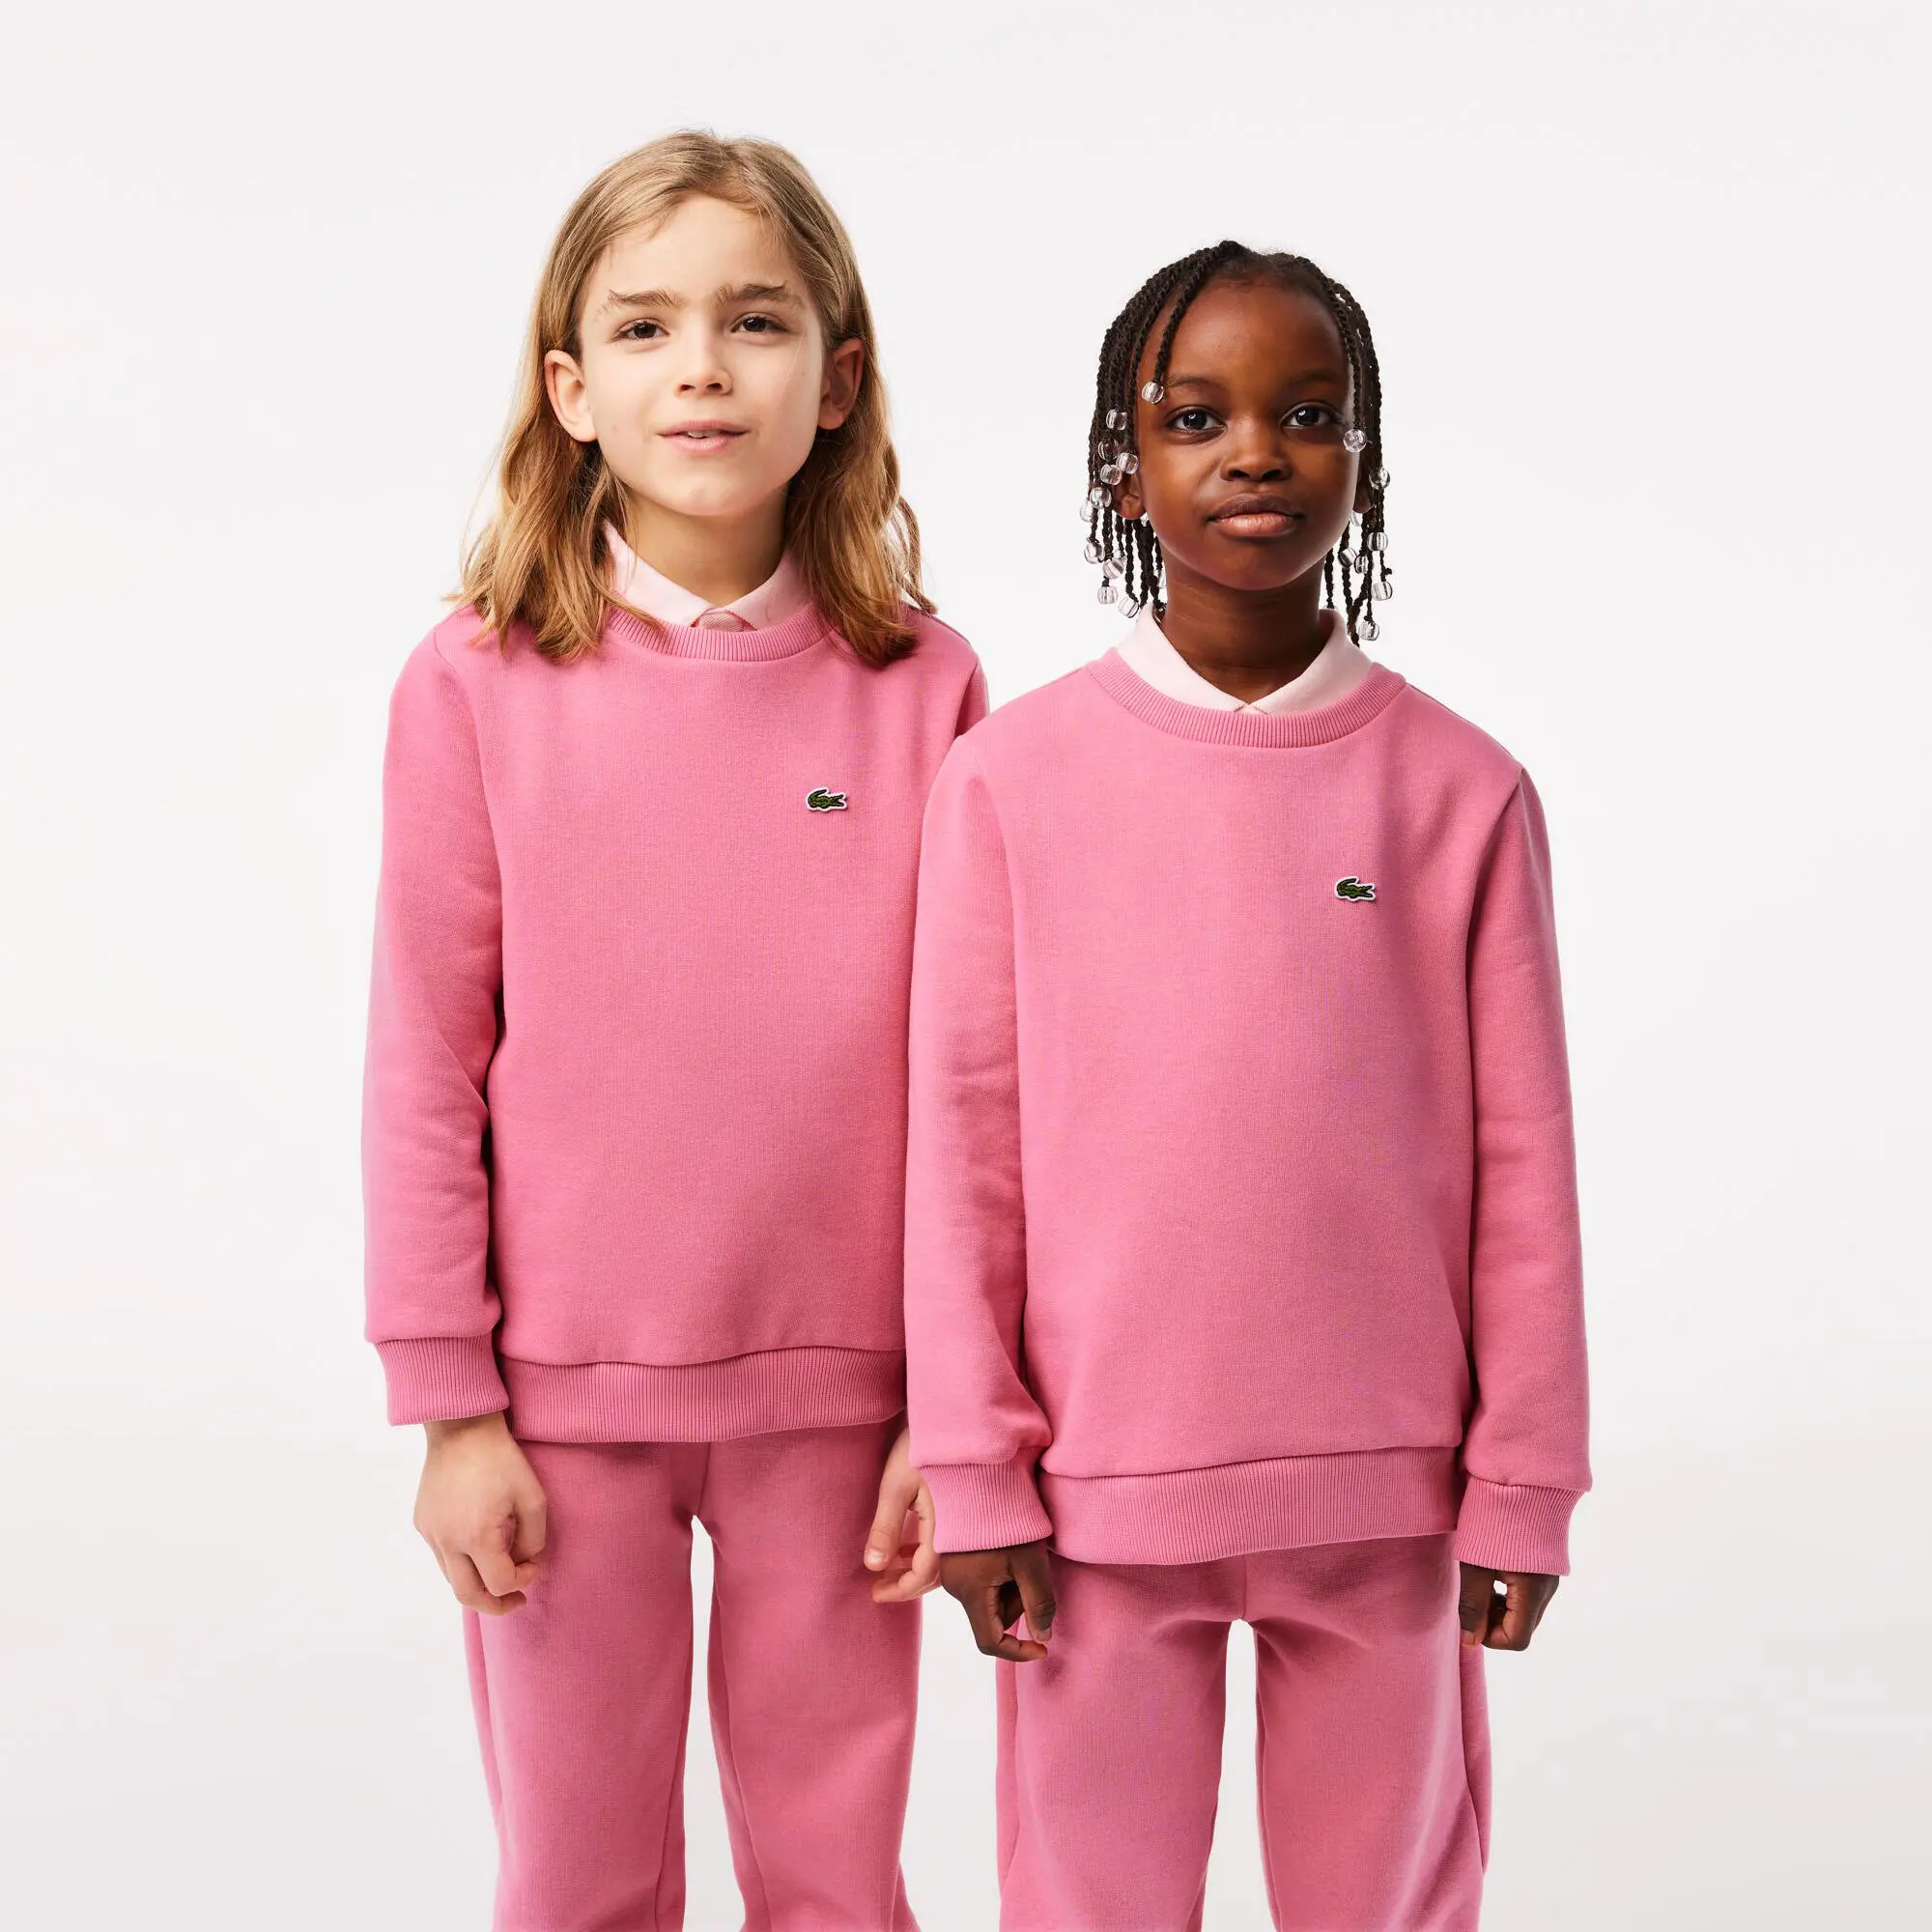 Lacoste Kids’ Lacoste Organic Cotton Flannel Sweatshirt. 1